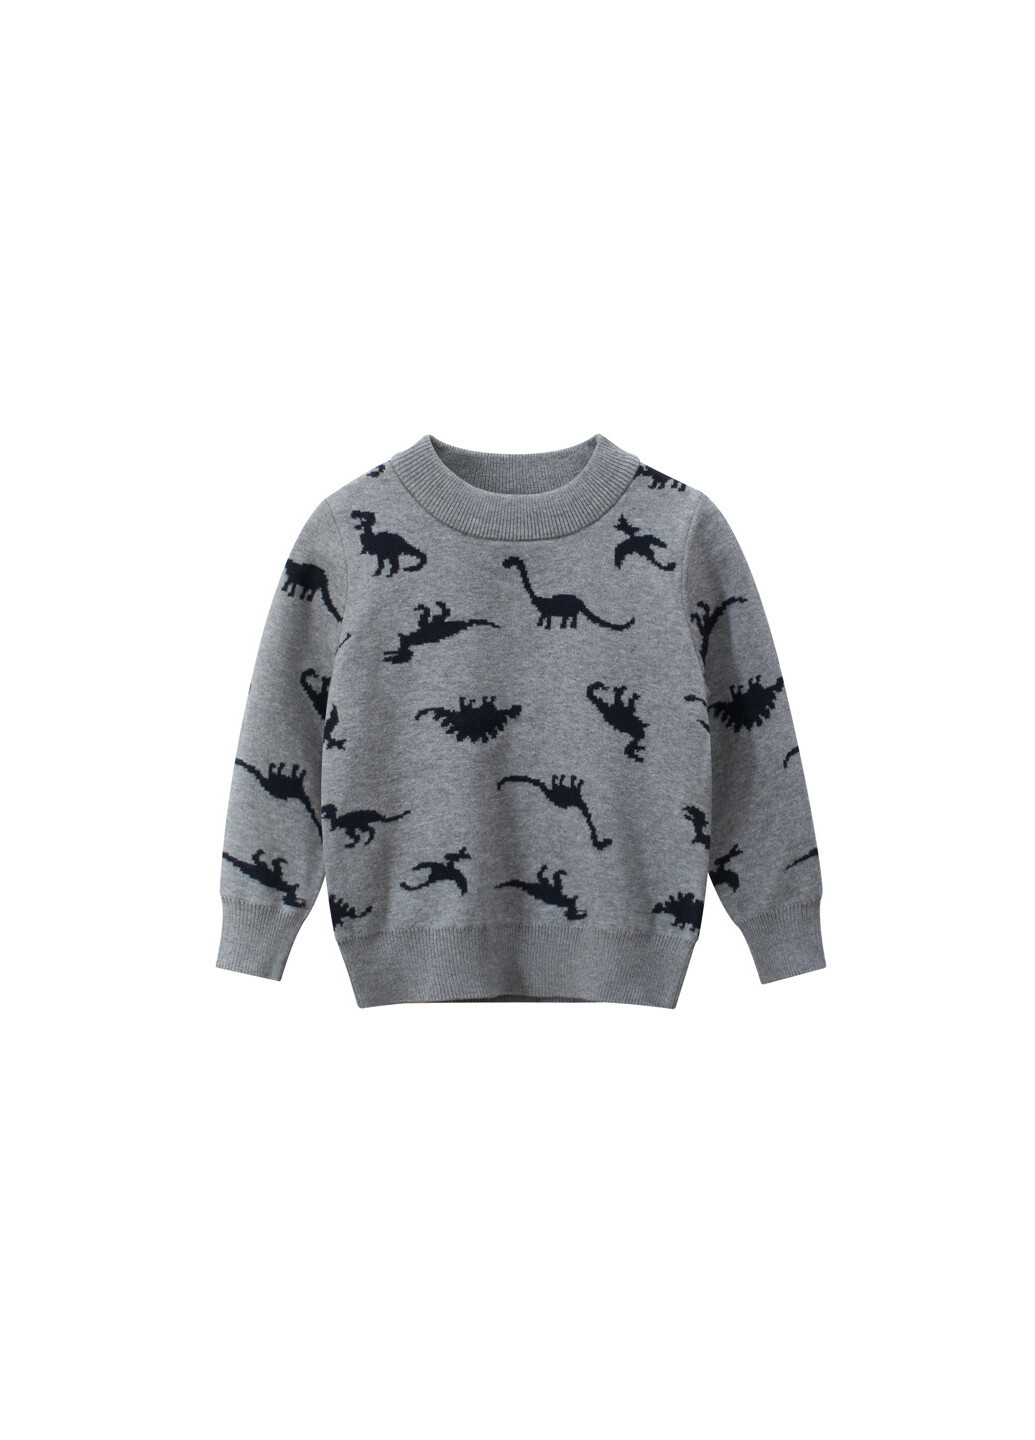 Серый демисезонный свитер для мальчика с рисунком динозавров серый black dinosaurs 27 KIDS 59195